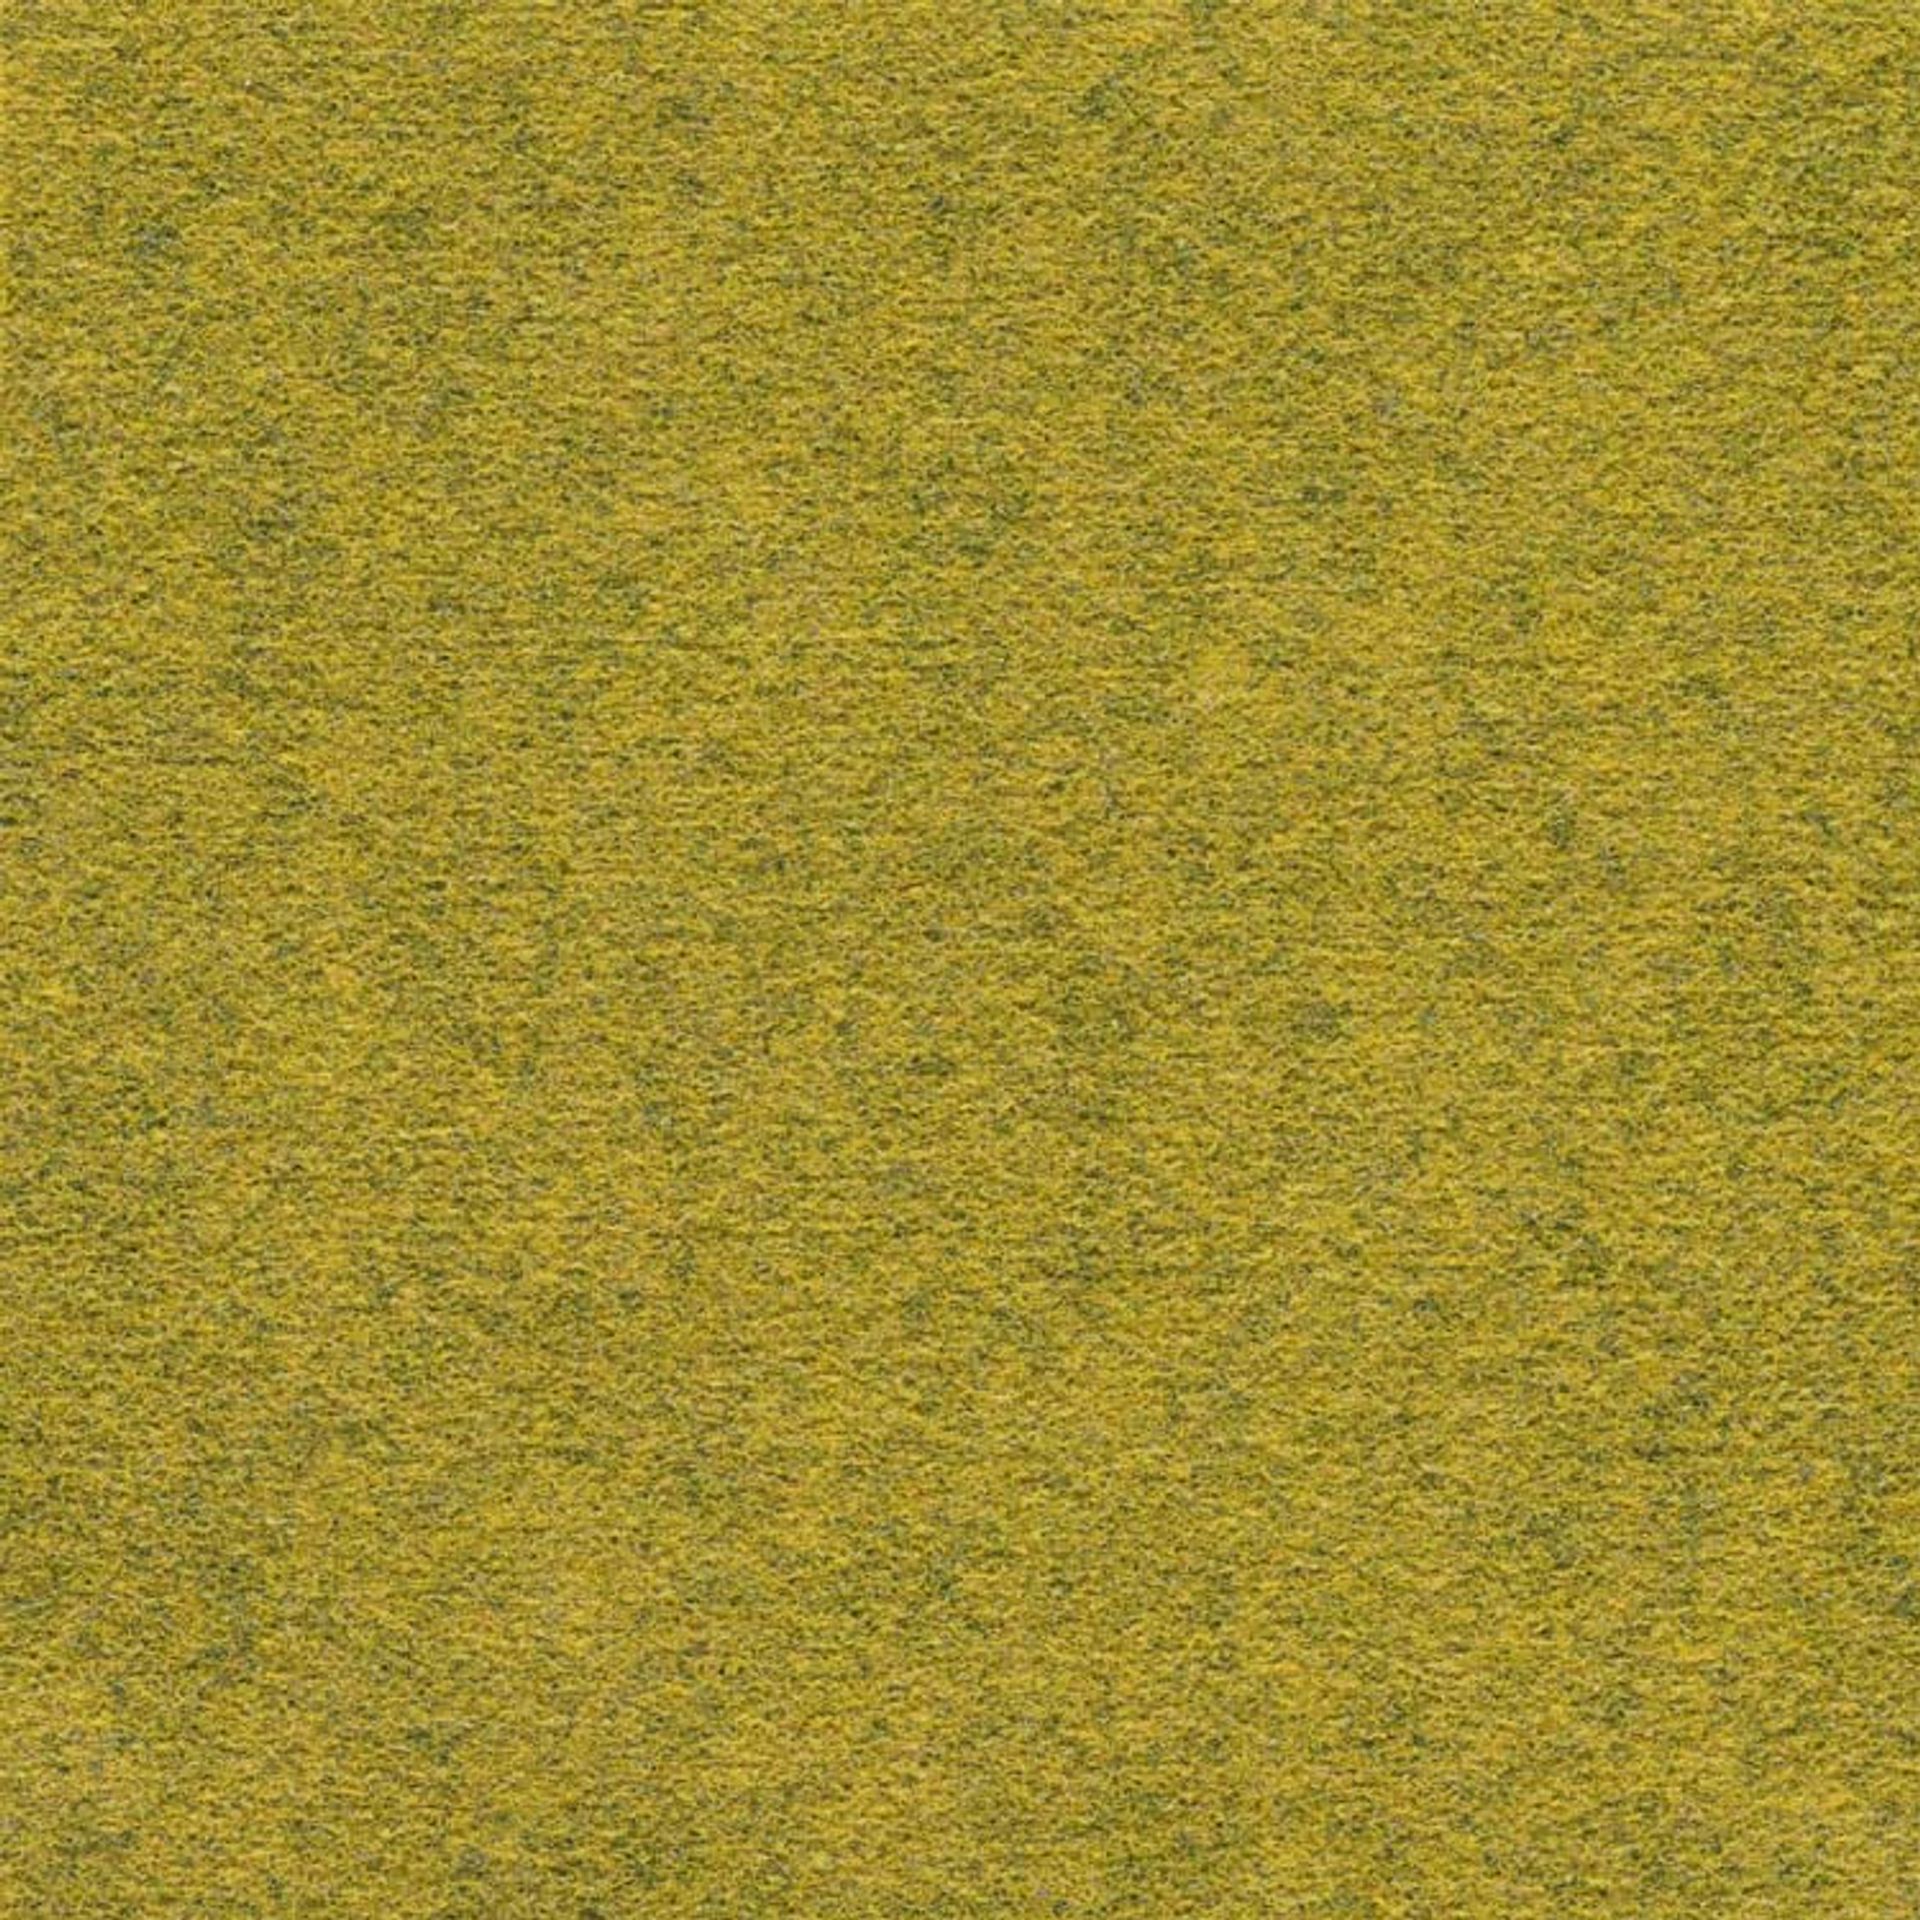 Teppichfliese 25 x 100 cm Nadelvlies FINETT DIMENSION farbige göße p209202 Honig